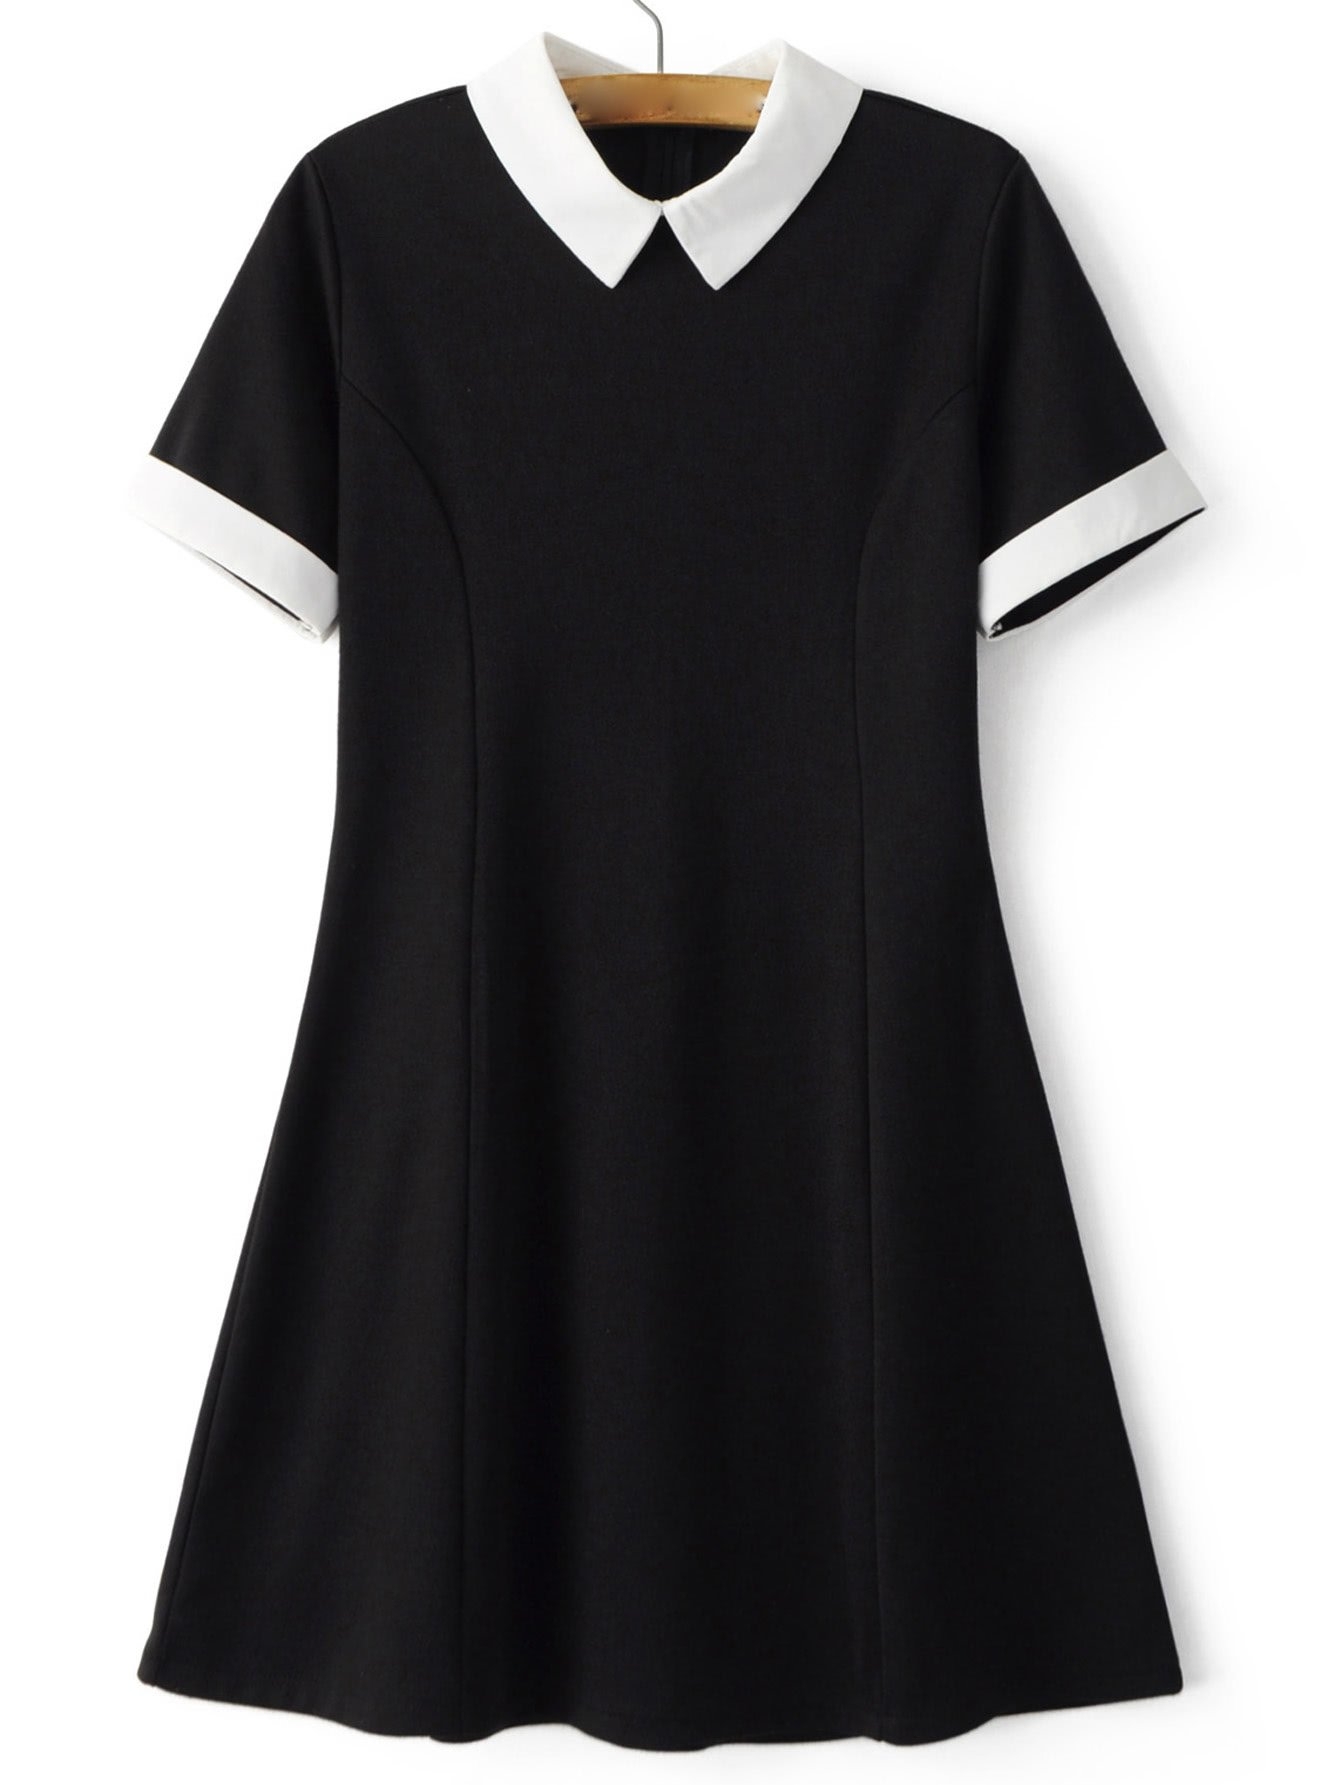 Черное платье с белым воротником Бонприкс